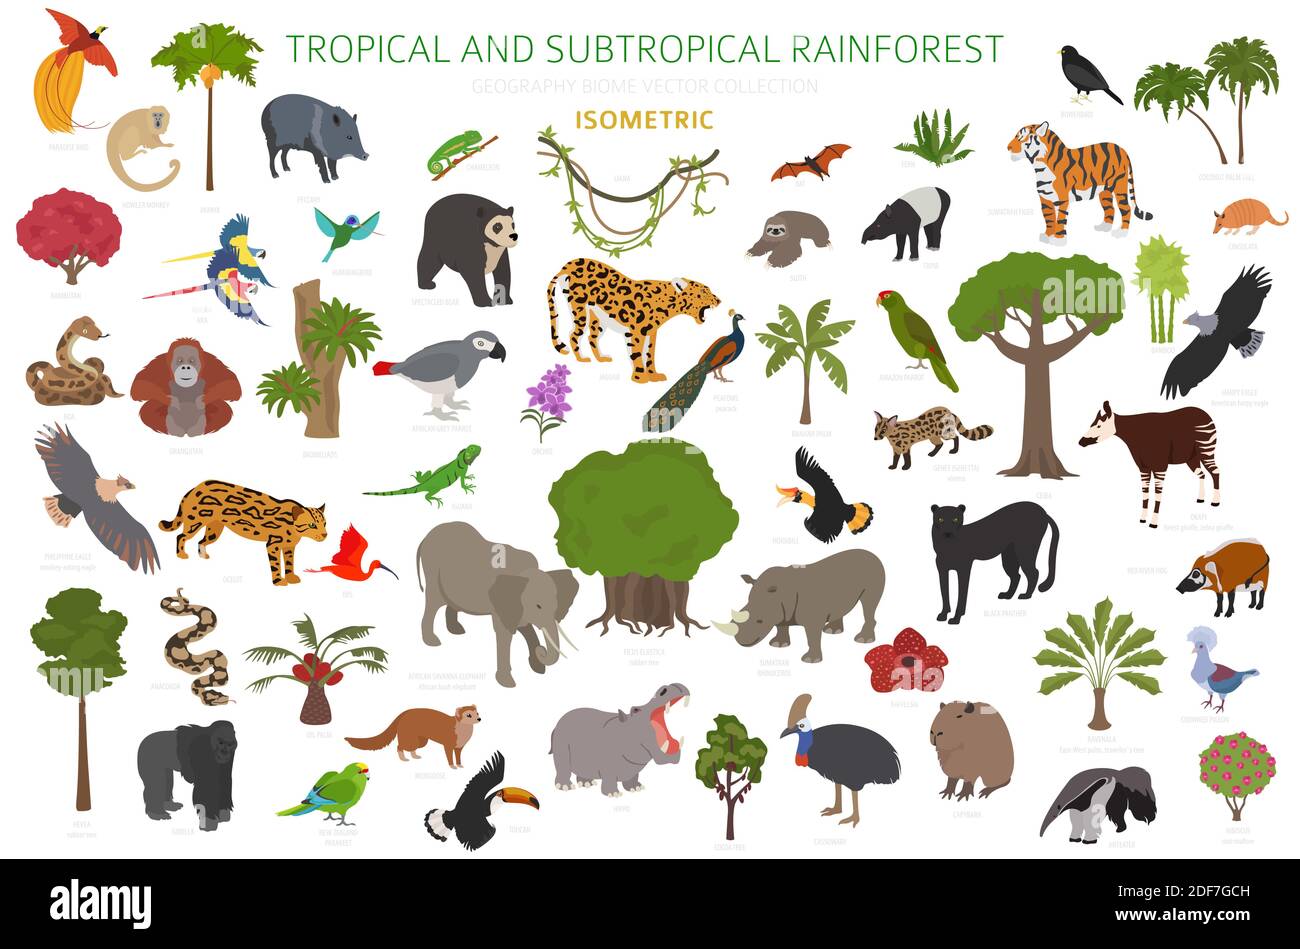 Tropisches und subtropisches Regenwaldbiom, Infografik zur natürlichen Region. Amazonas, Afrika, Asien, australien Regenwälder. Tiere, Vögel und vegetatio Stock Vektor